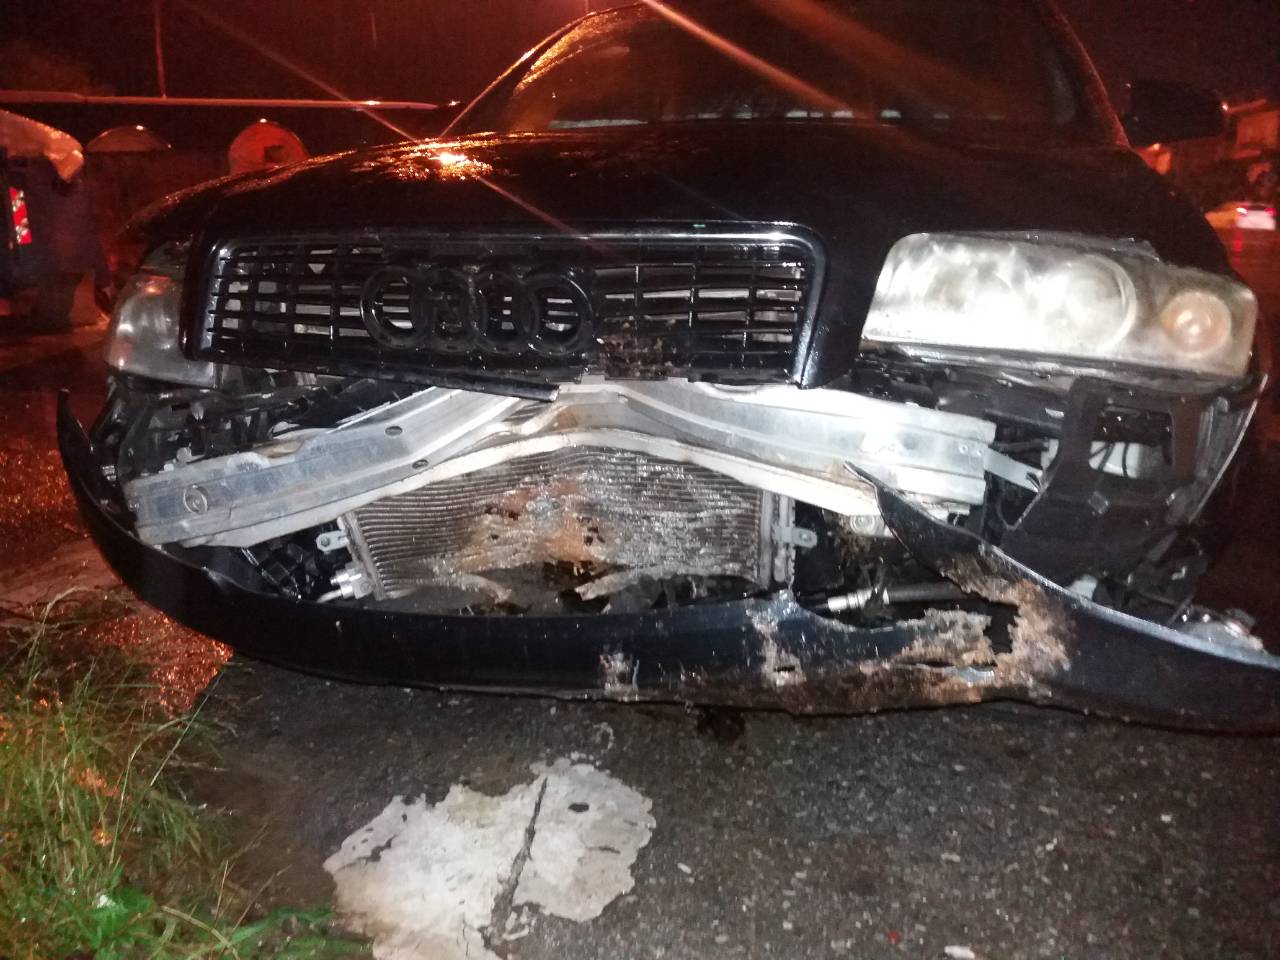 Χανιά:Έπεσαν βράχια στο Πλατάνι και προκάλεσαν τροχαίο 2 αυτοκινήτων (φωτο)